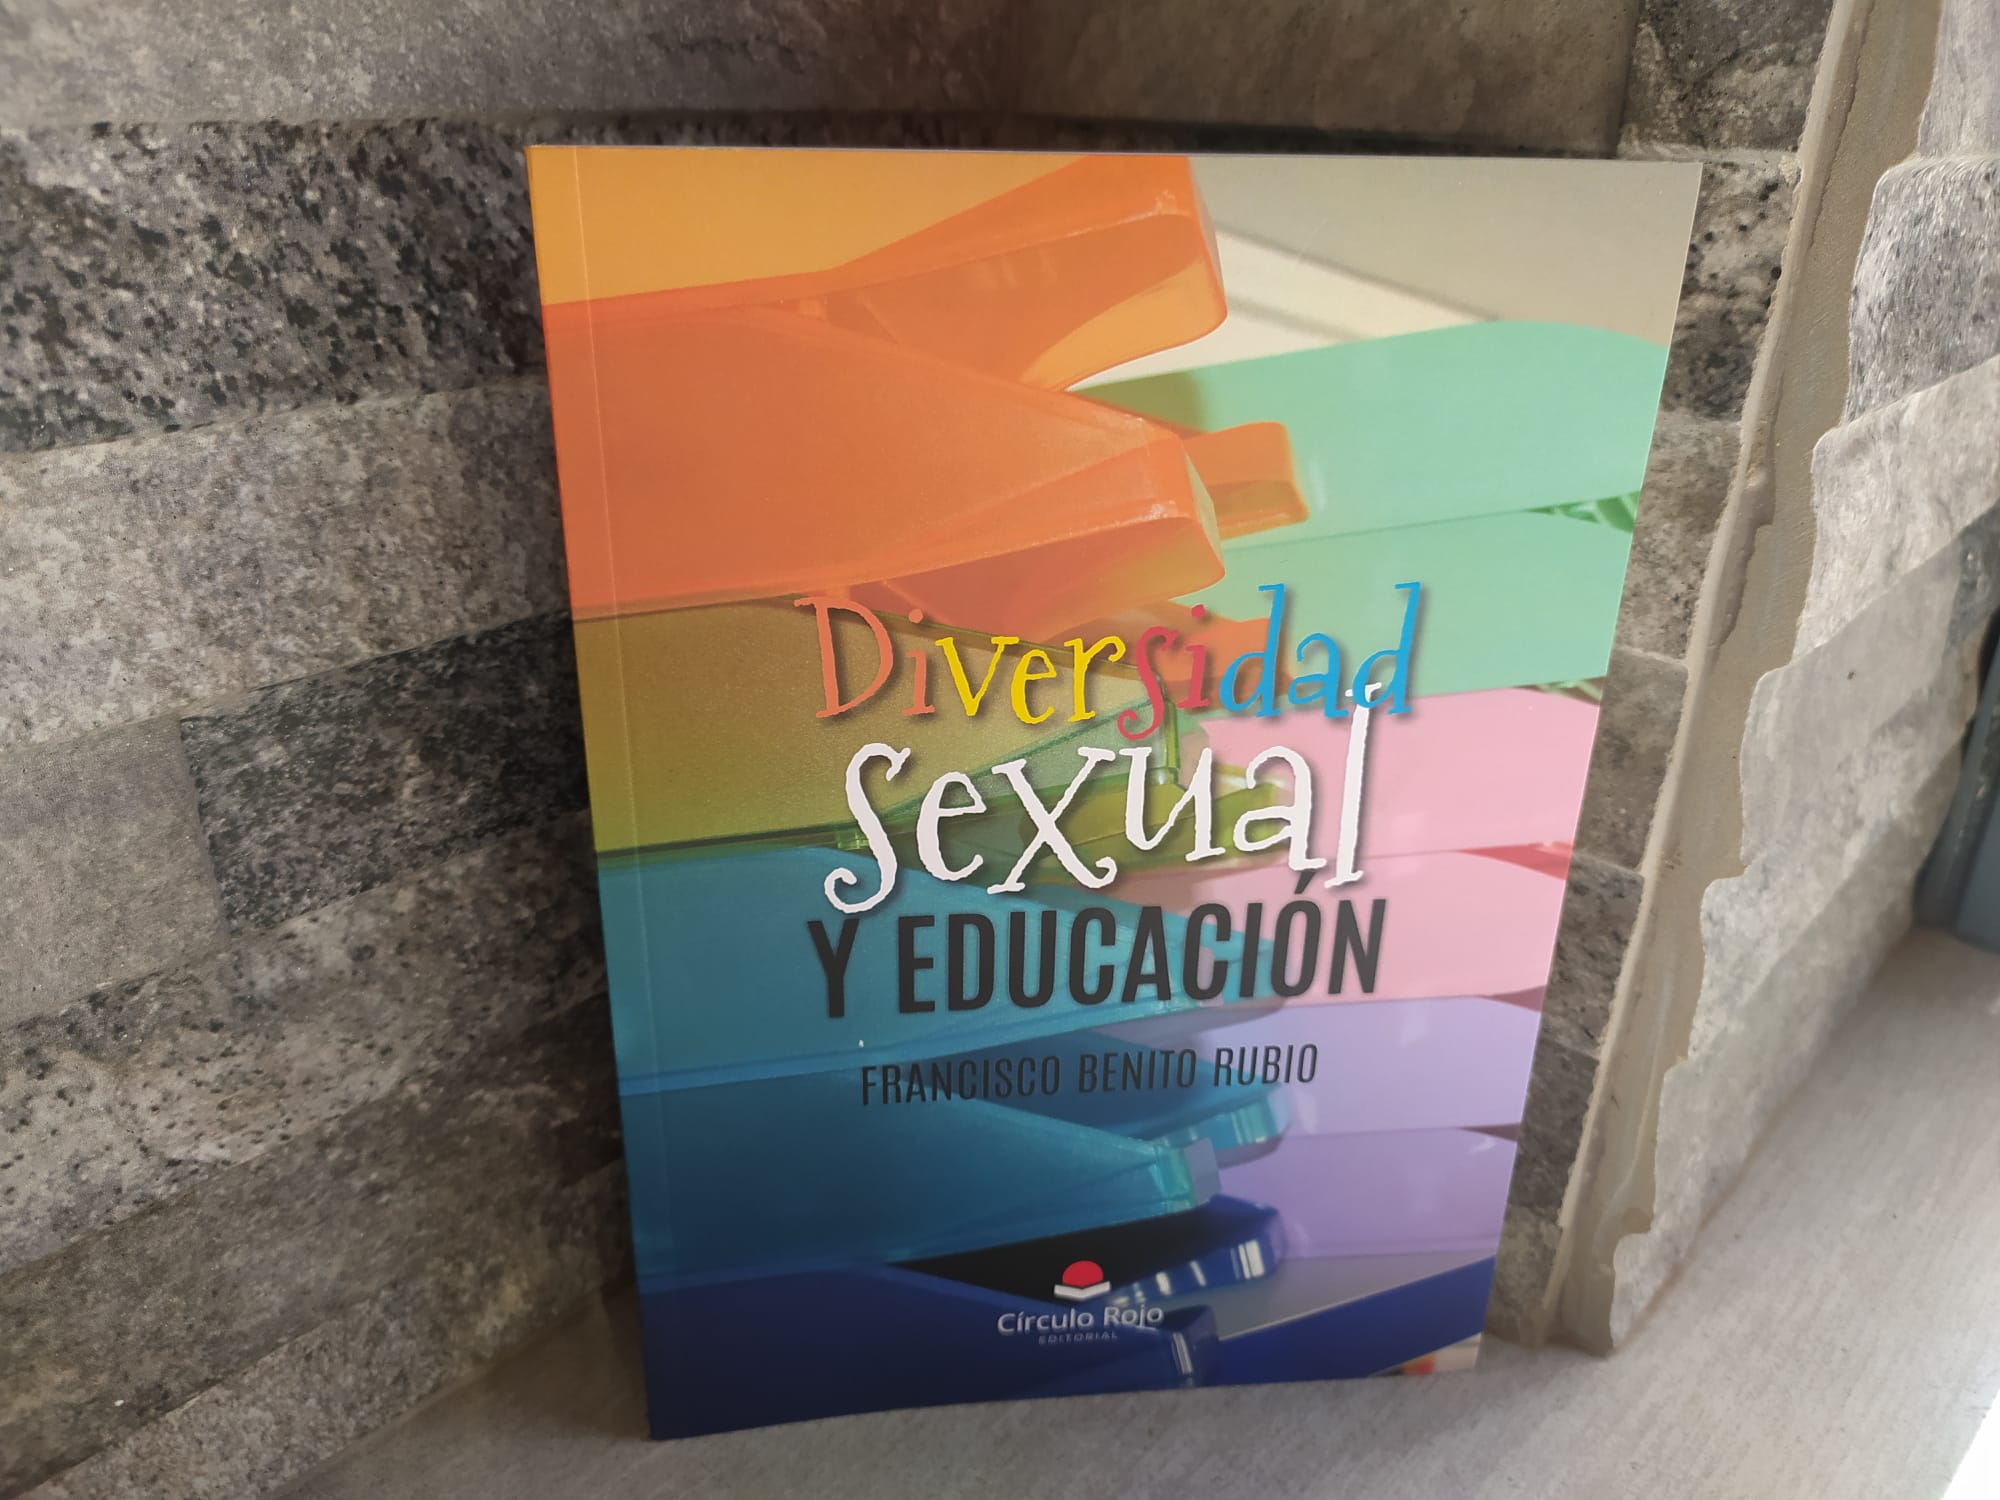 Francisco Benito Rubio “Diversidad sexual y educación"